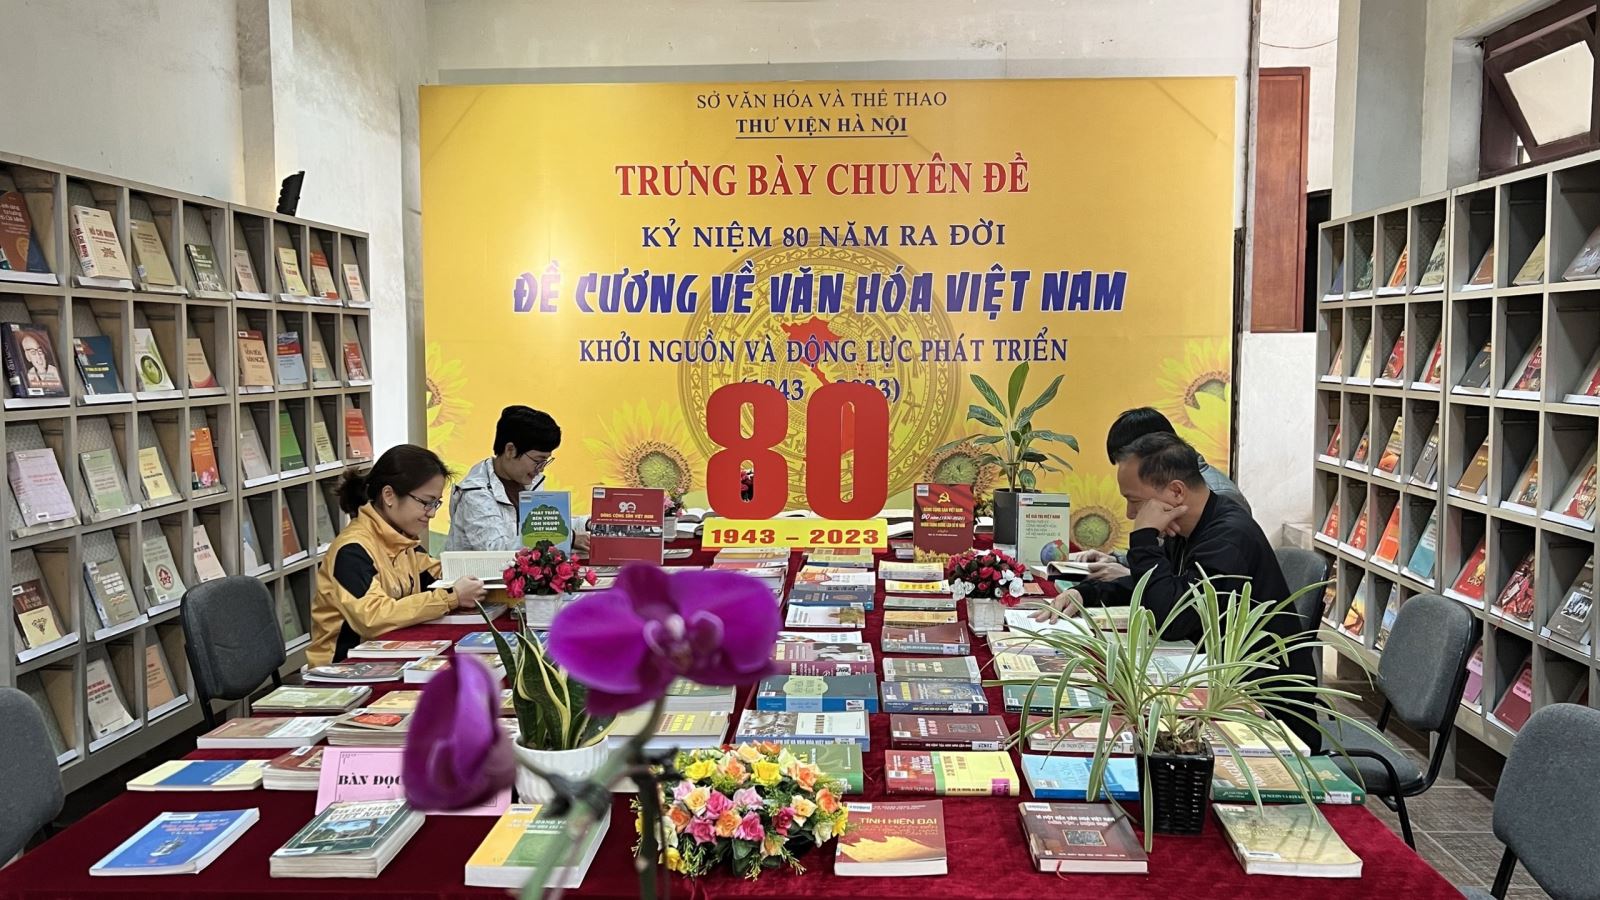 Trưng bày chuyên đề kỷ niệm 80 năm ra đời “Đề cương về văn hóa Việt Nam”